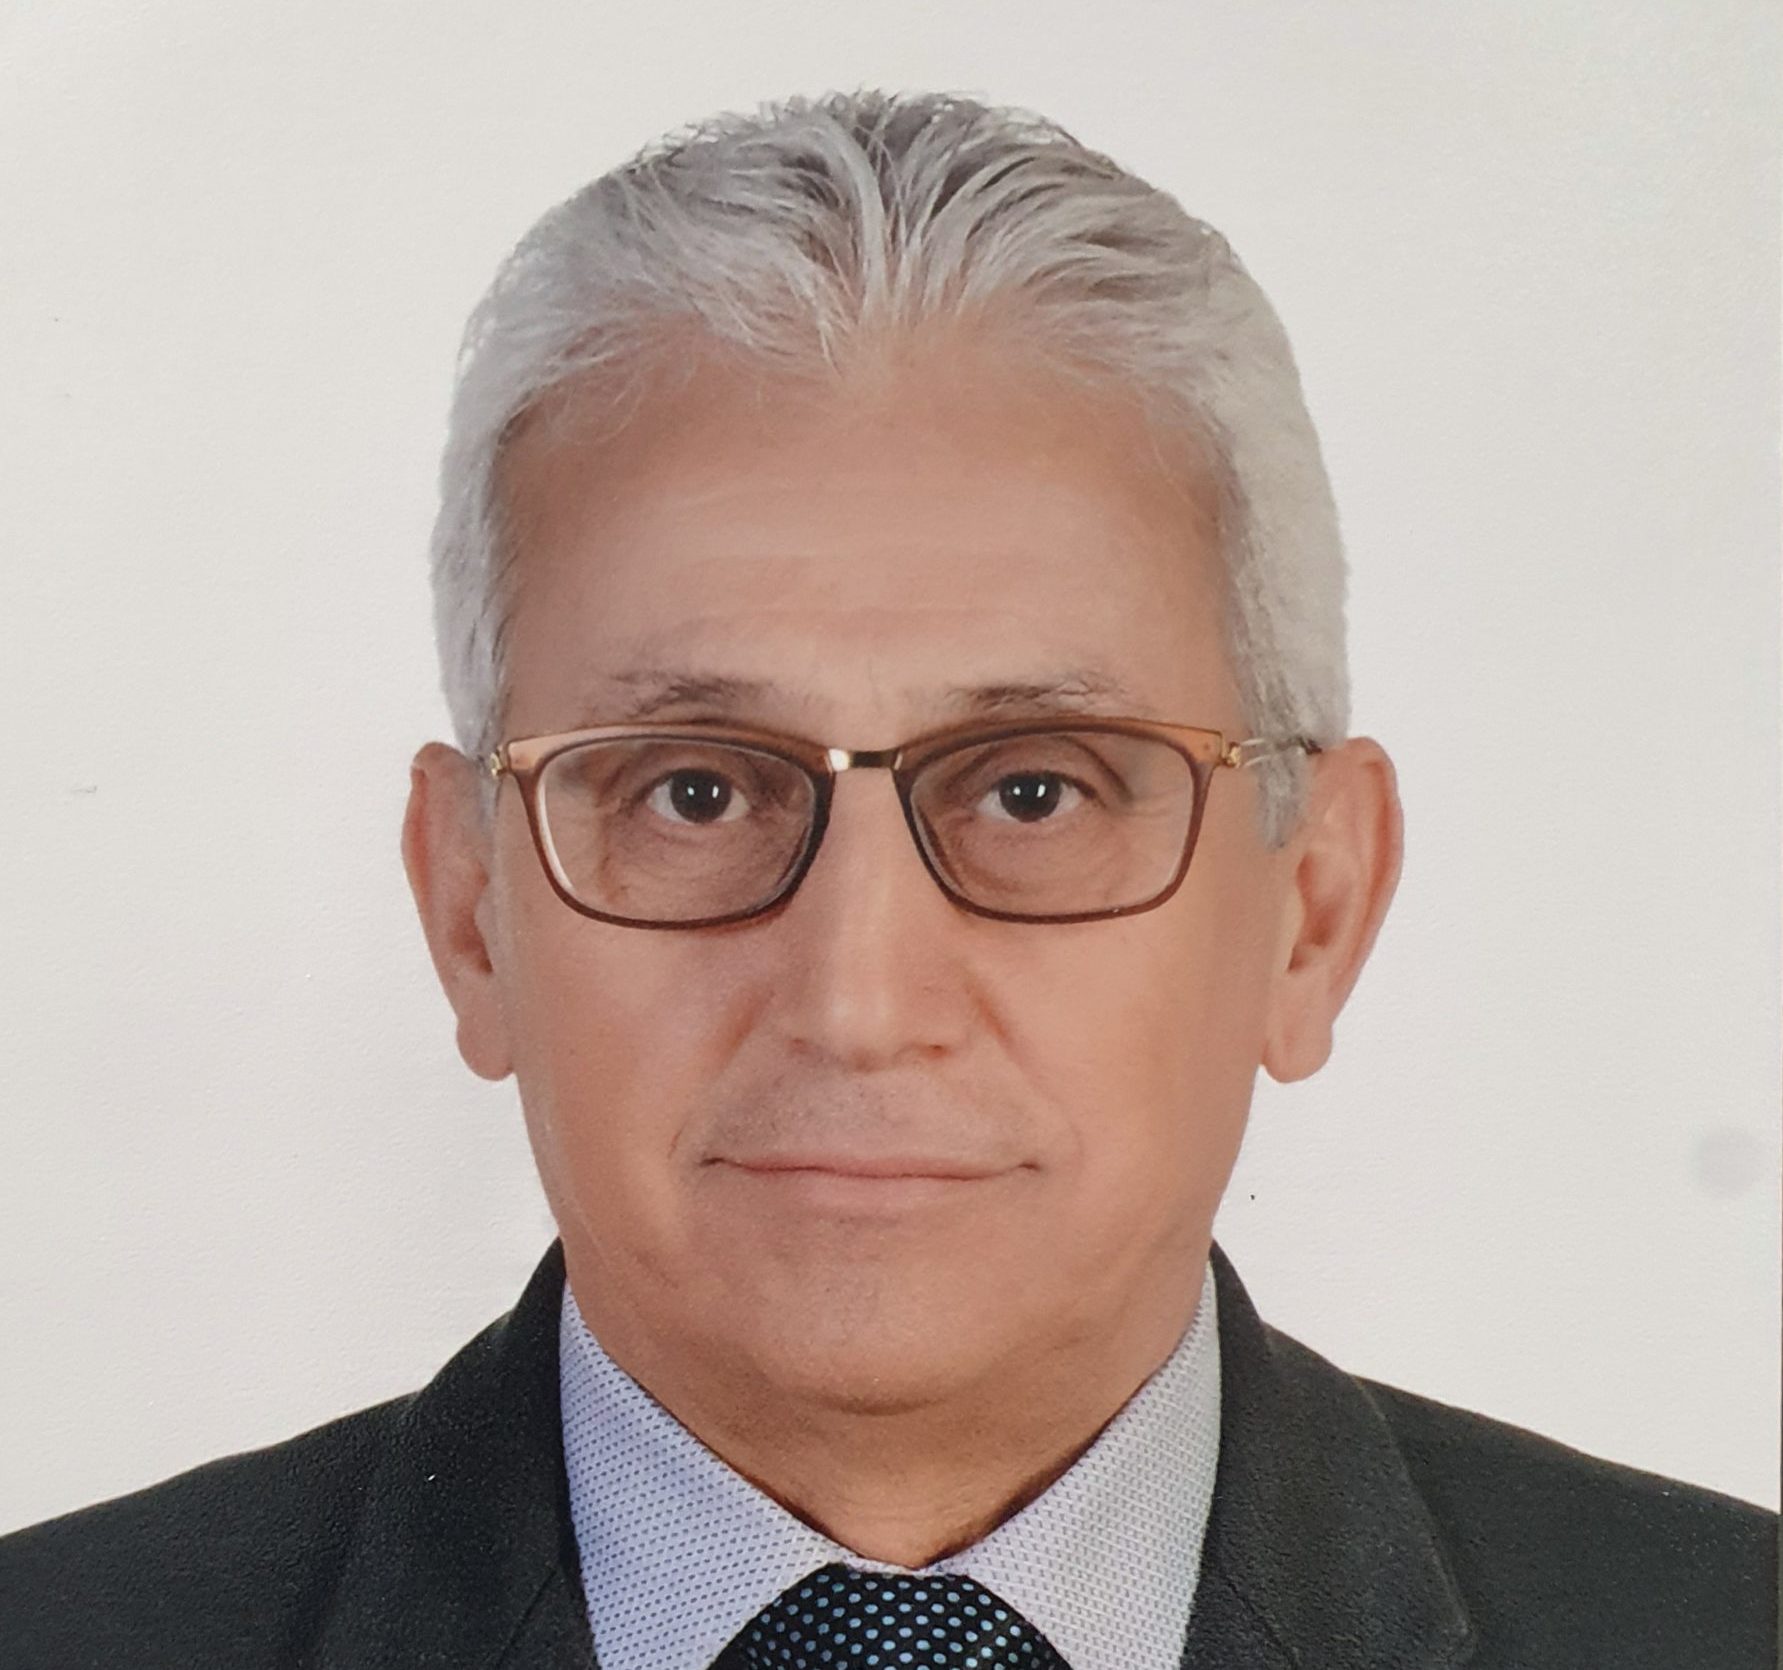 Dr. Maher Aboumayaleh